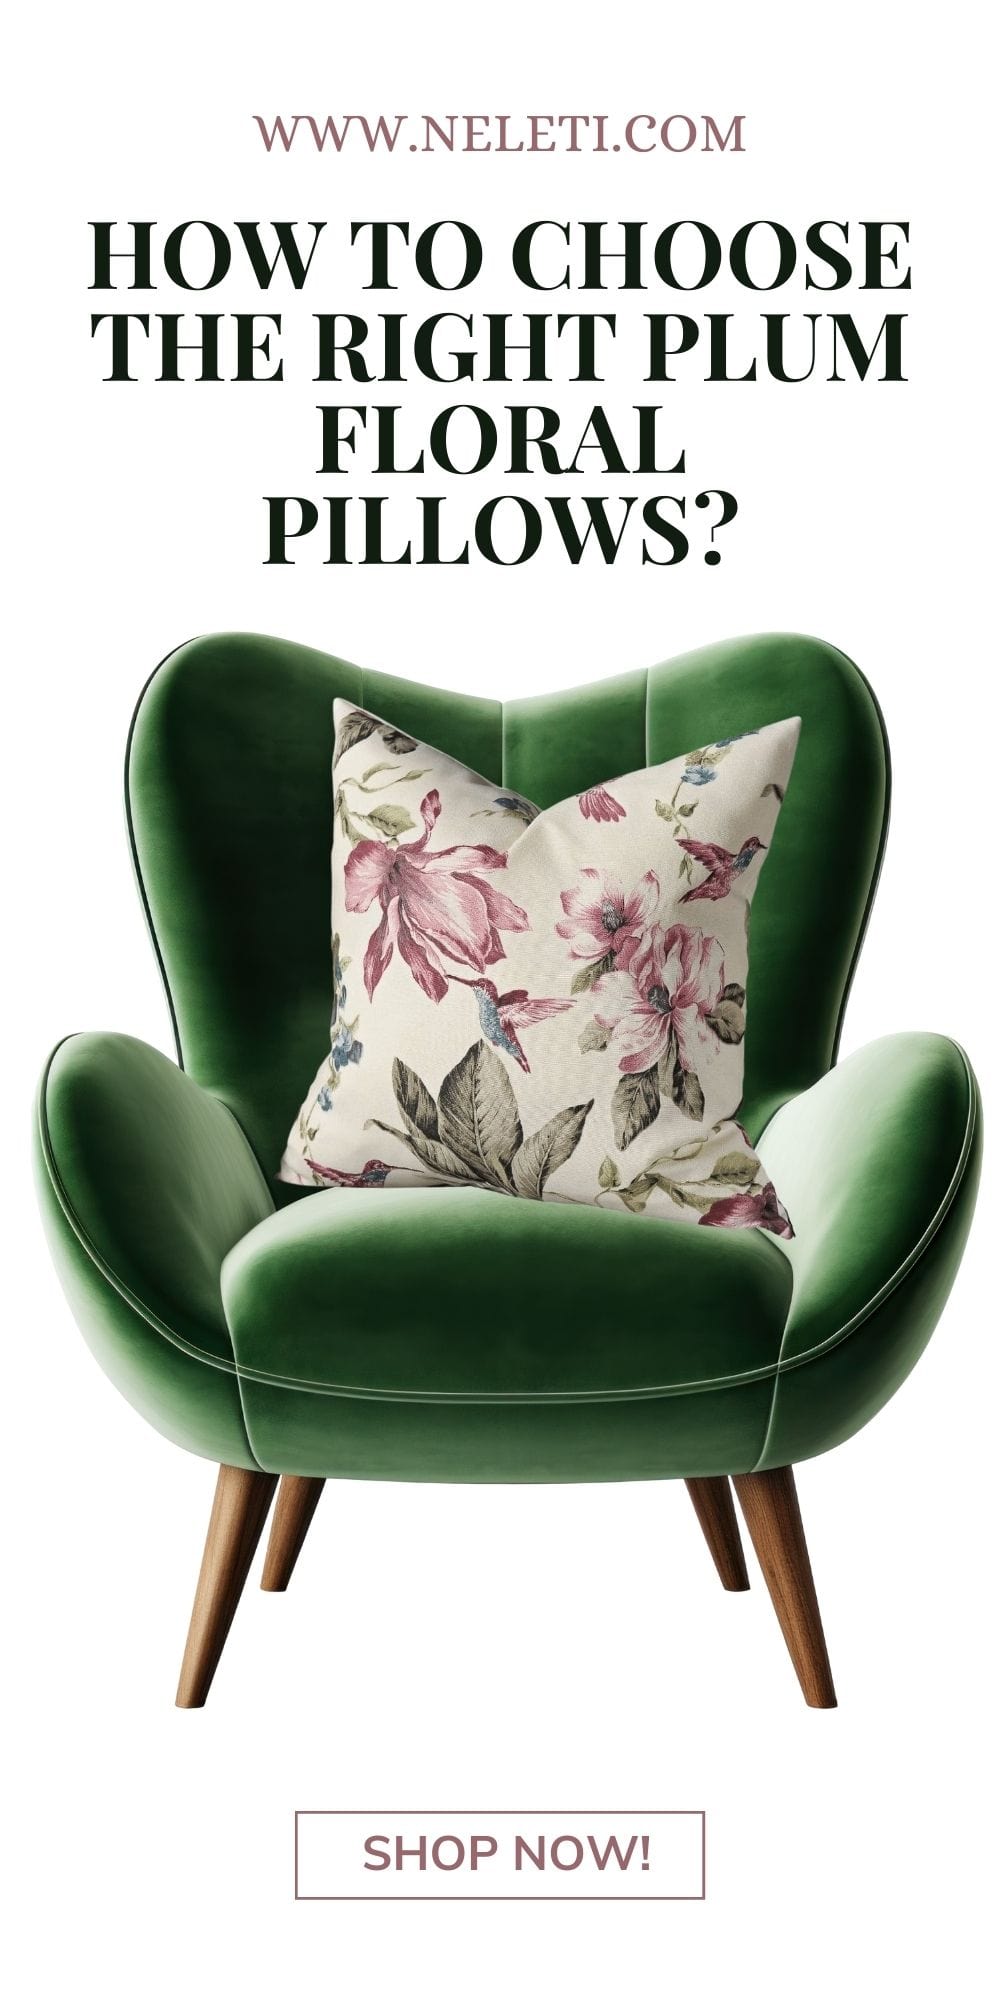 neleti.com-plum-floral-pillows